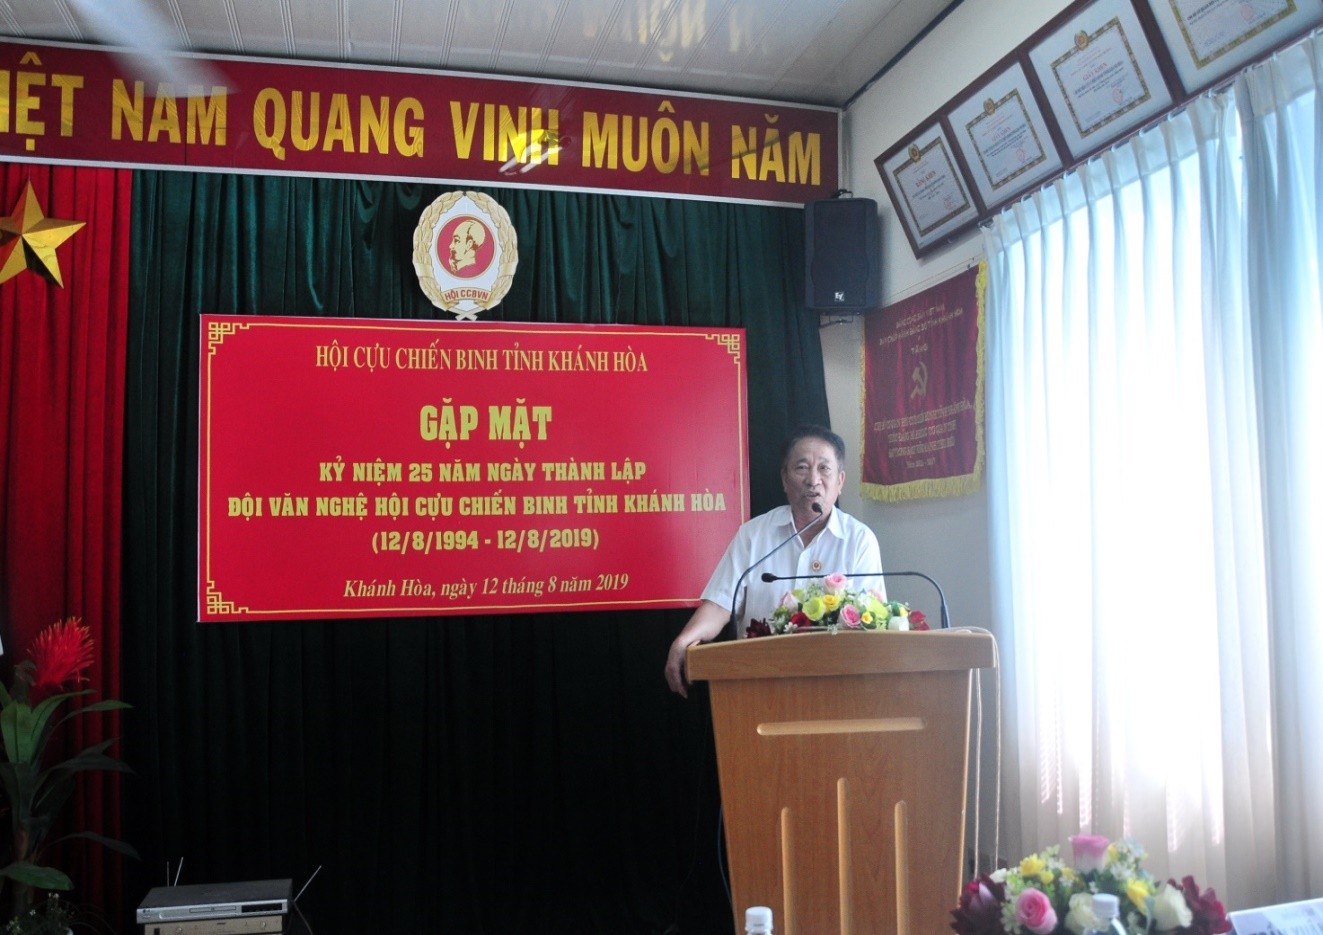 Đại Tá Trần Văn Hạnh, Chủ tịch Hội Cựu Chiến Binh Khánh hòa phát biểu tại Lễ Kỷ niệm